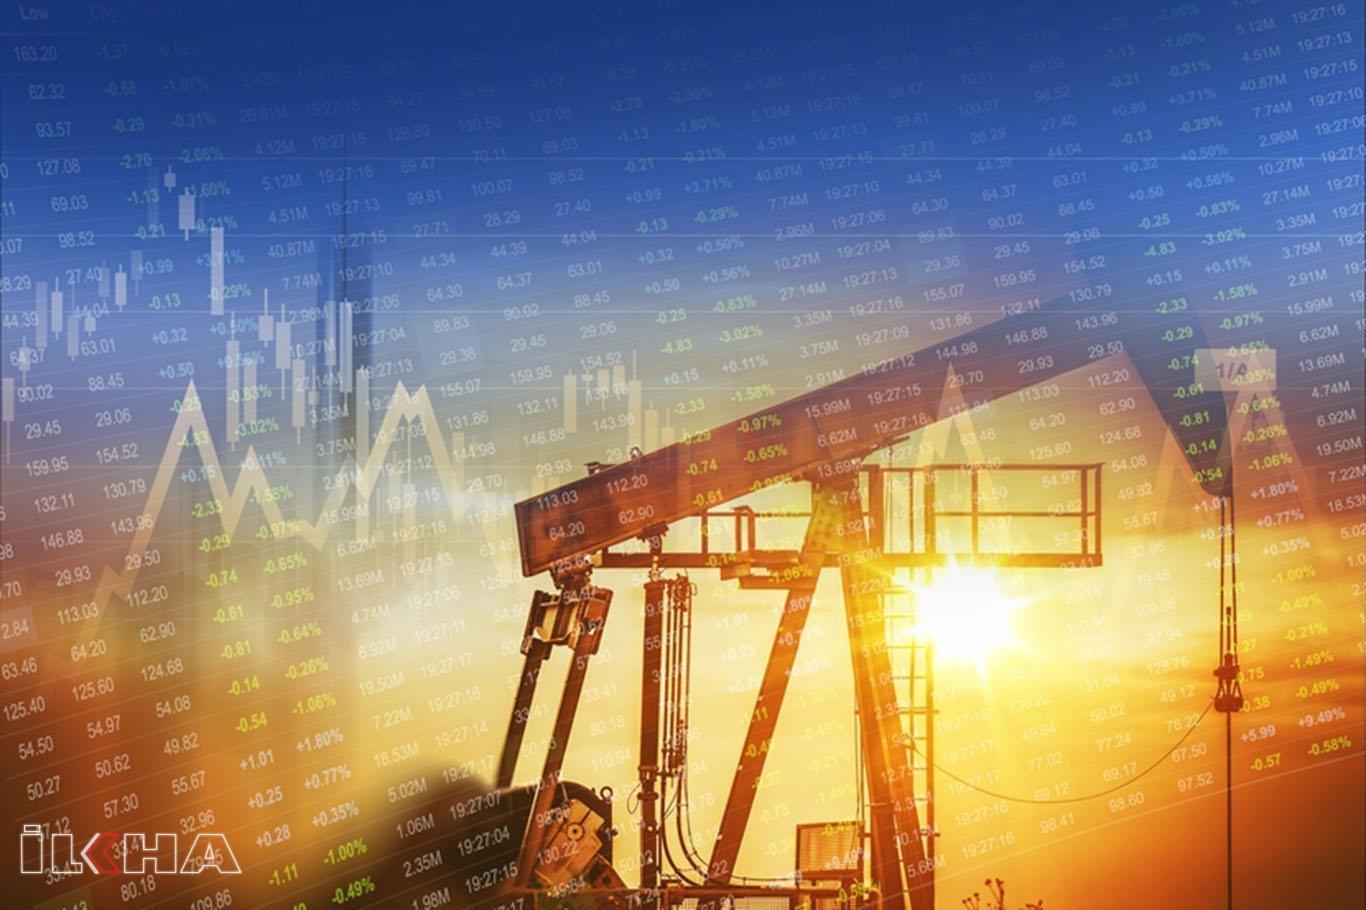 Oil prices rise as Saudis halt production